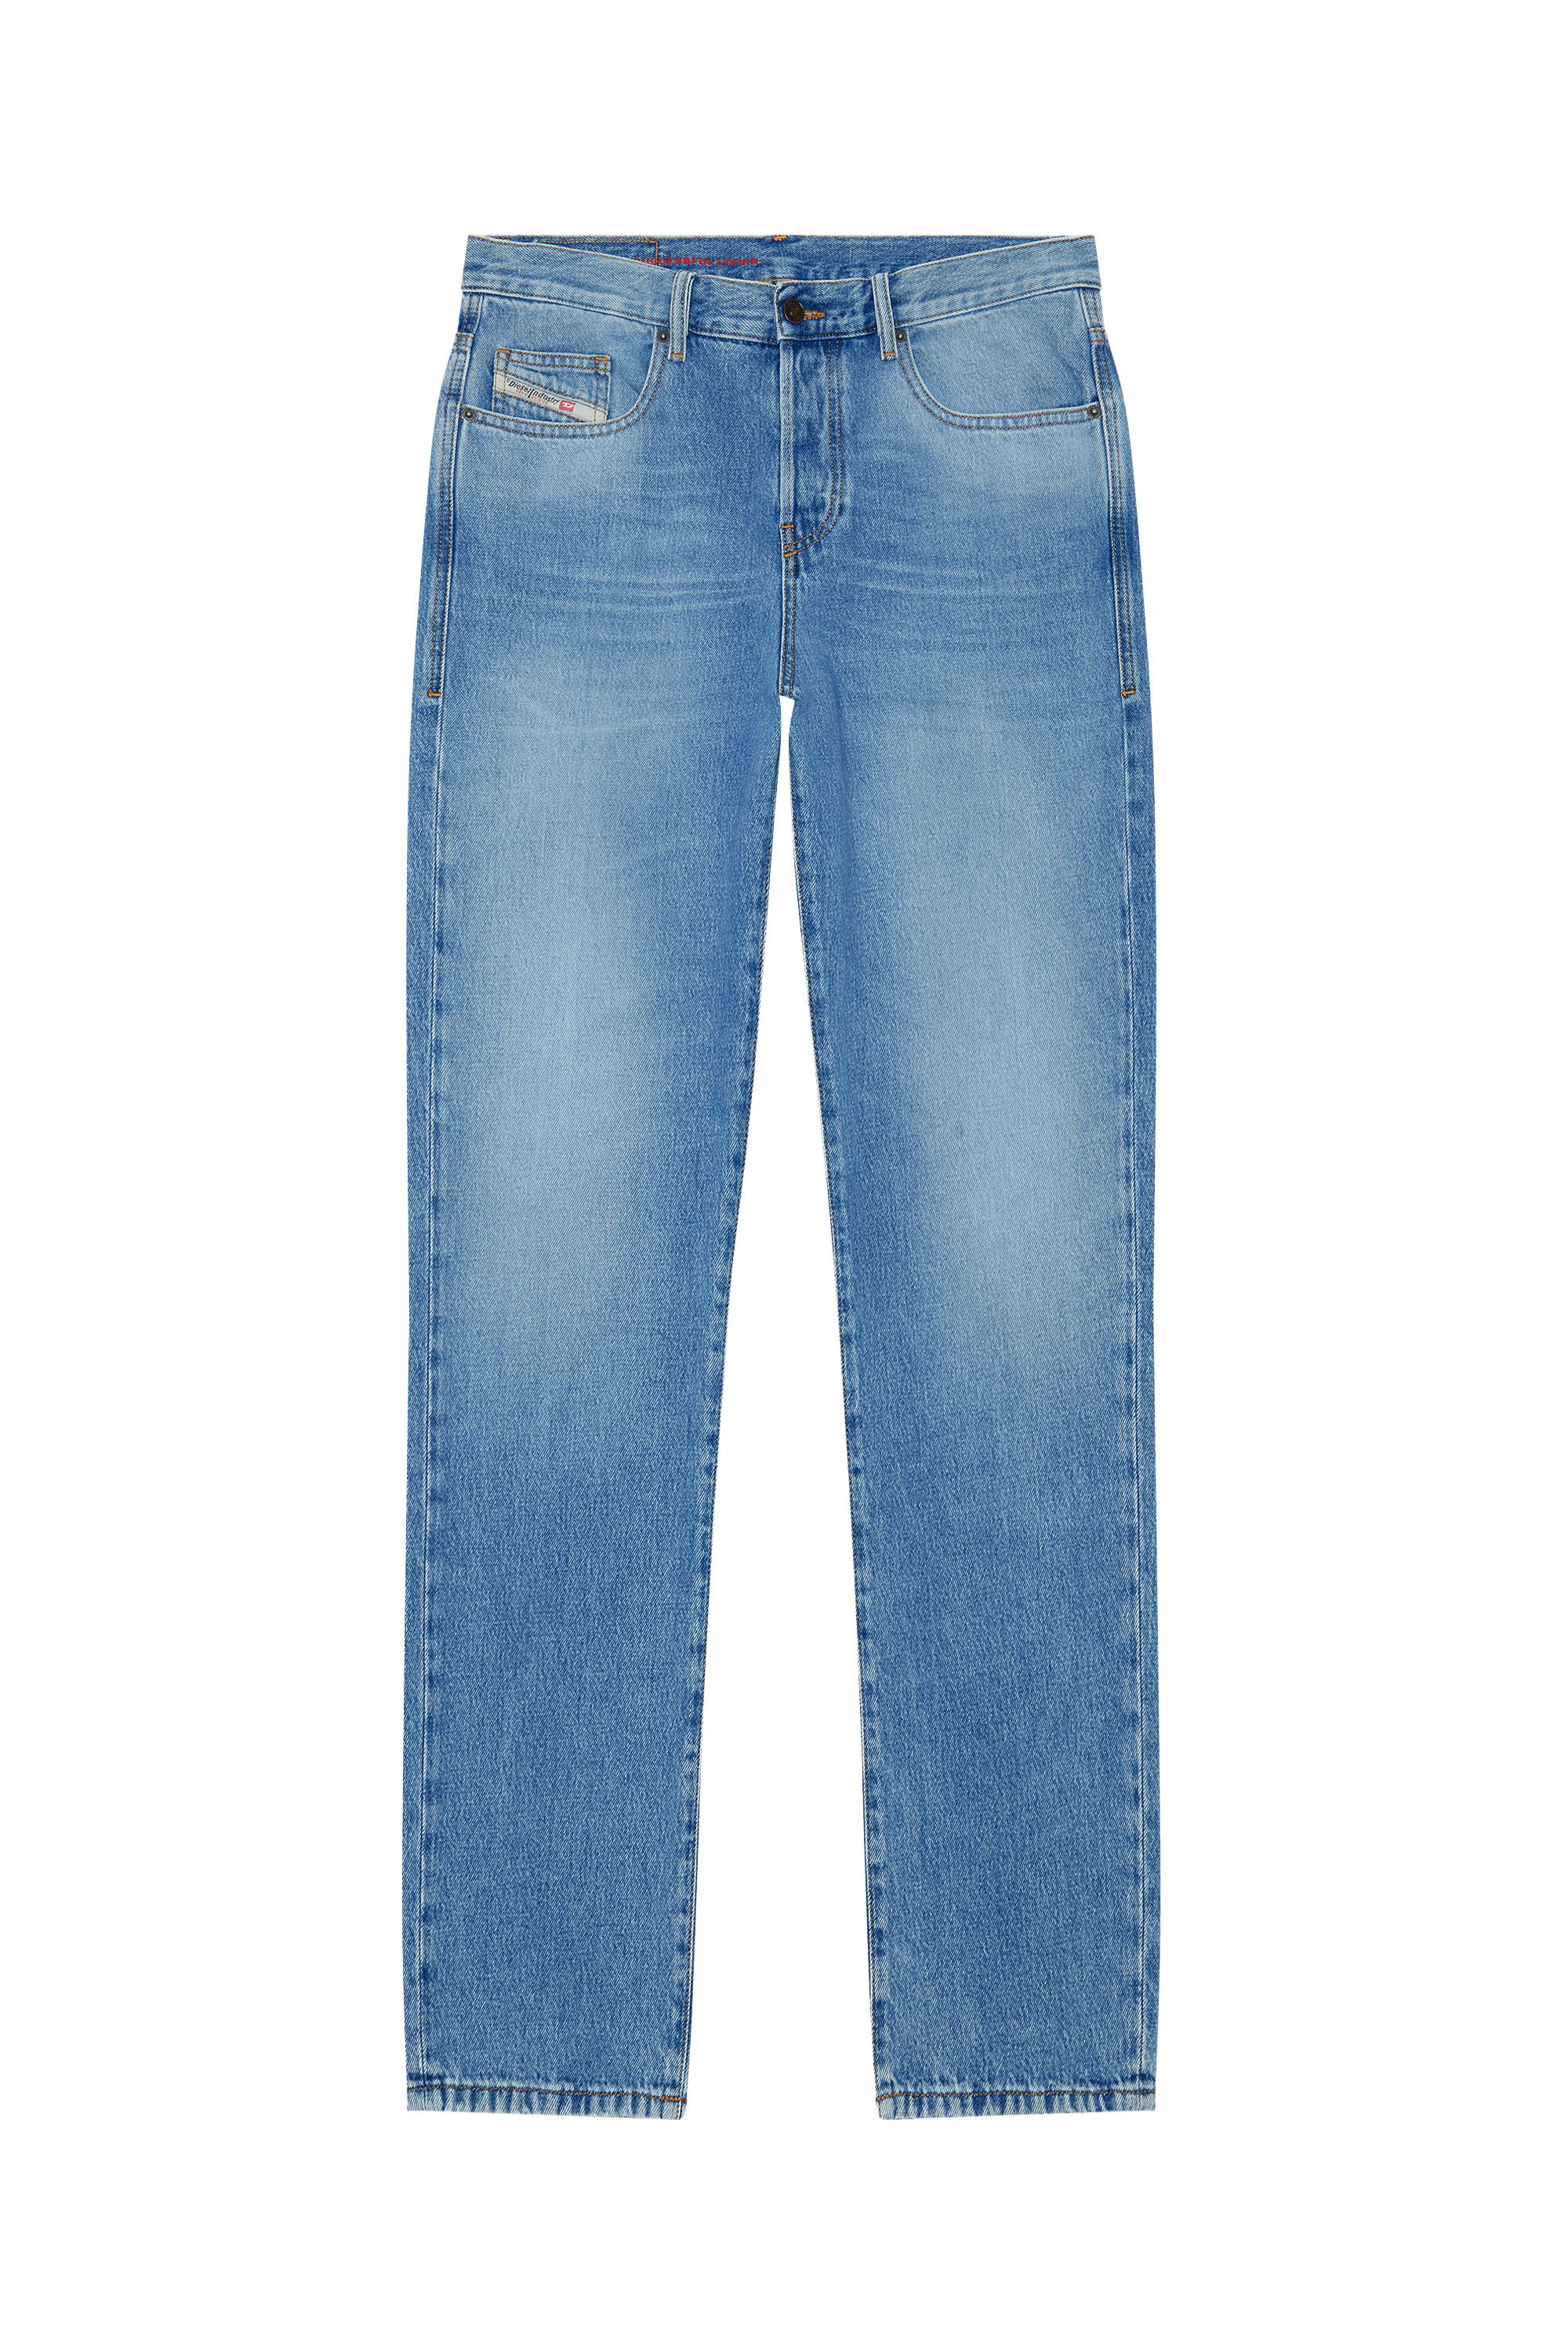 2020 D-VIKER 09C15 Straight Jeans, Hellblau - Jeans